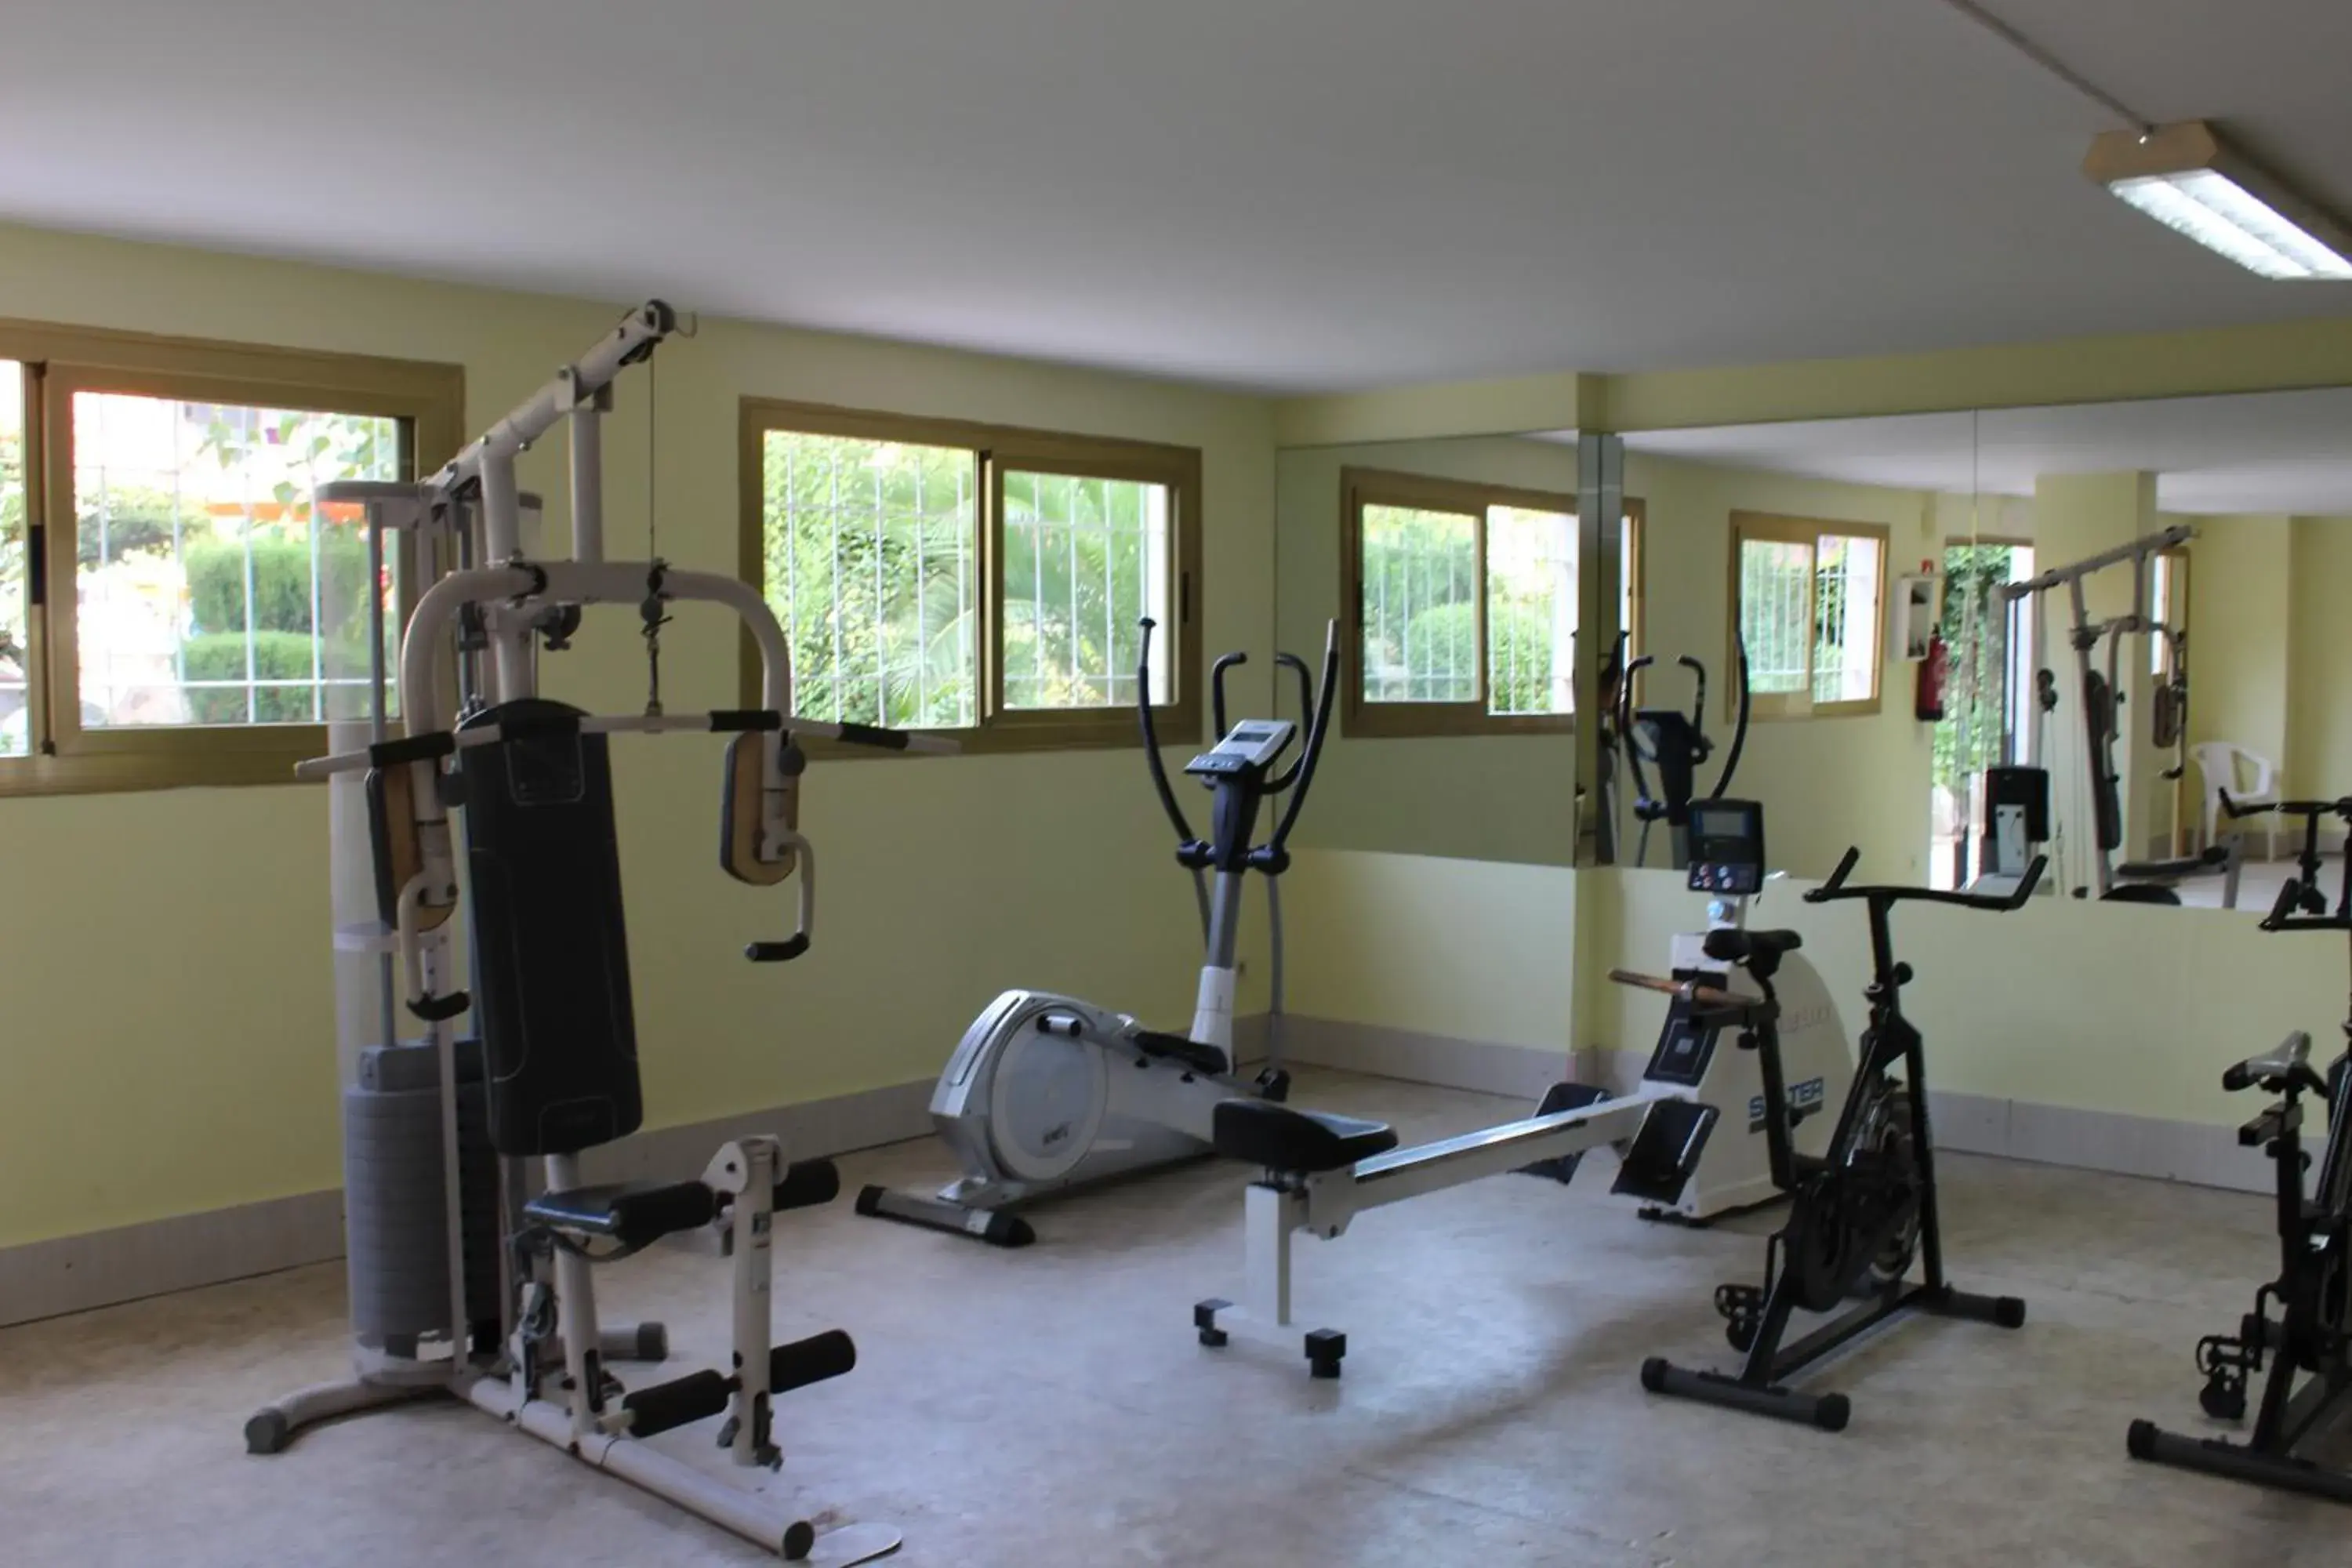 Fitness centre/facilities, Fitness Center/Facilities in Hotel Esplendid